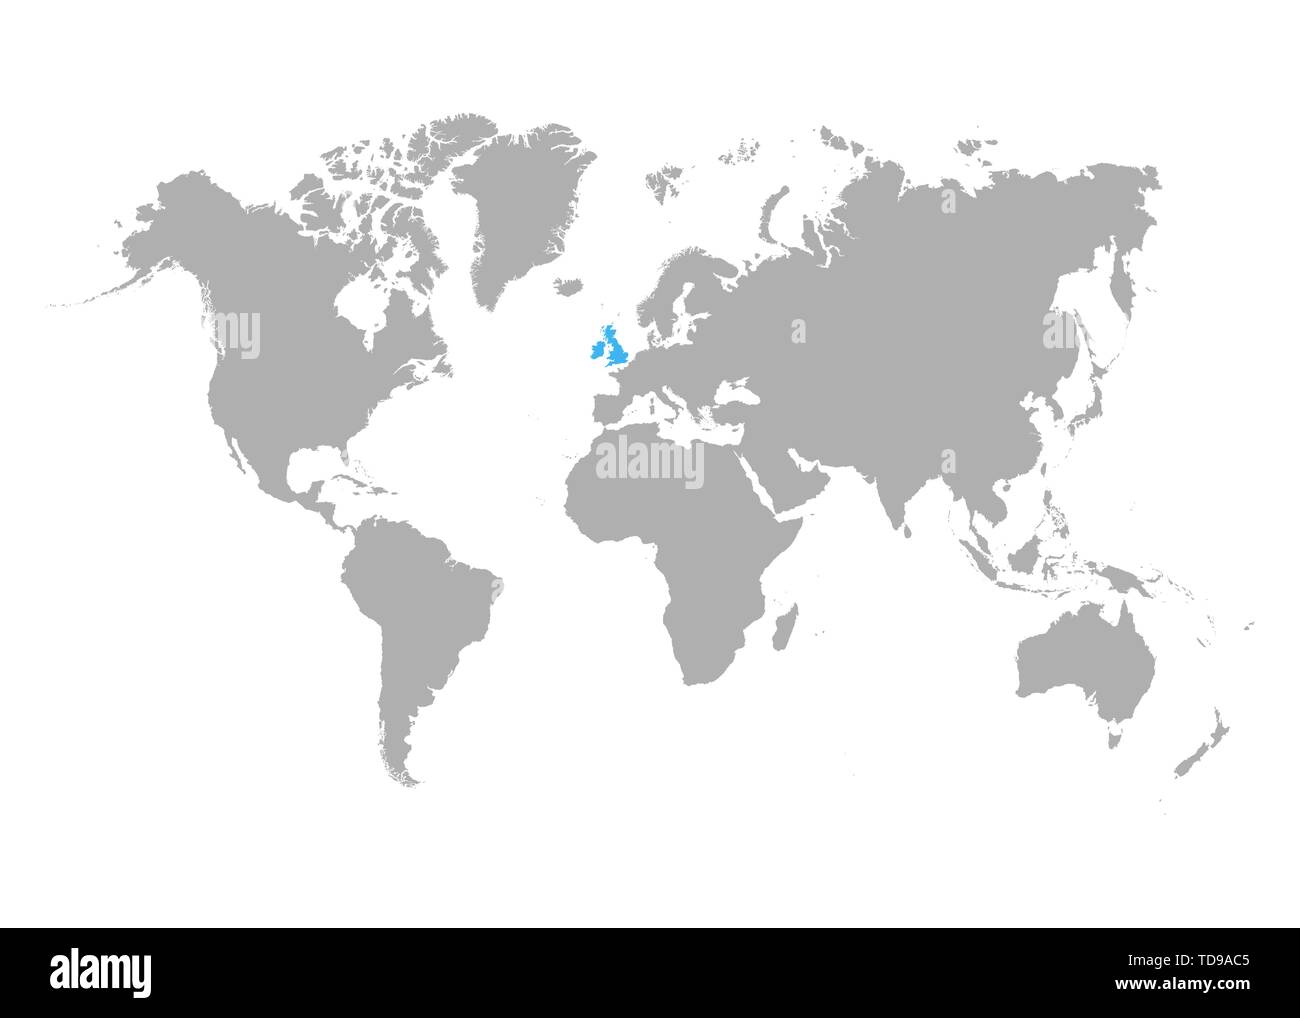 La mappa del Regno Unito è evidenziata in blu sulla mappa del mondo. Vettore Illustrazione Vettoriale